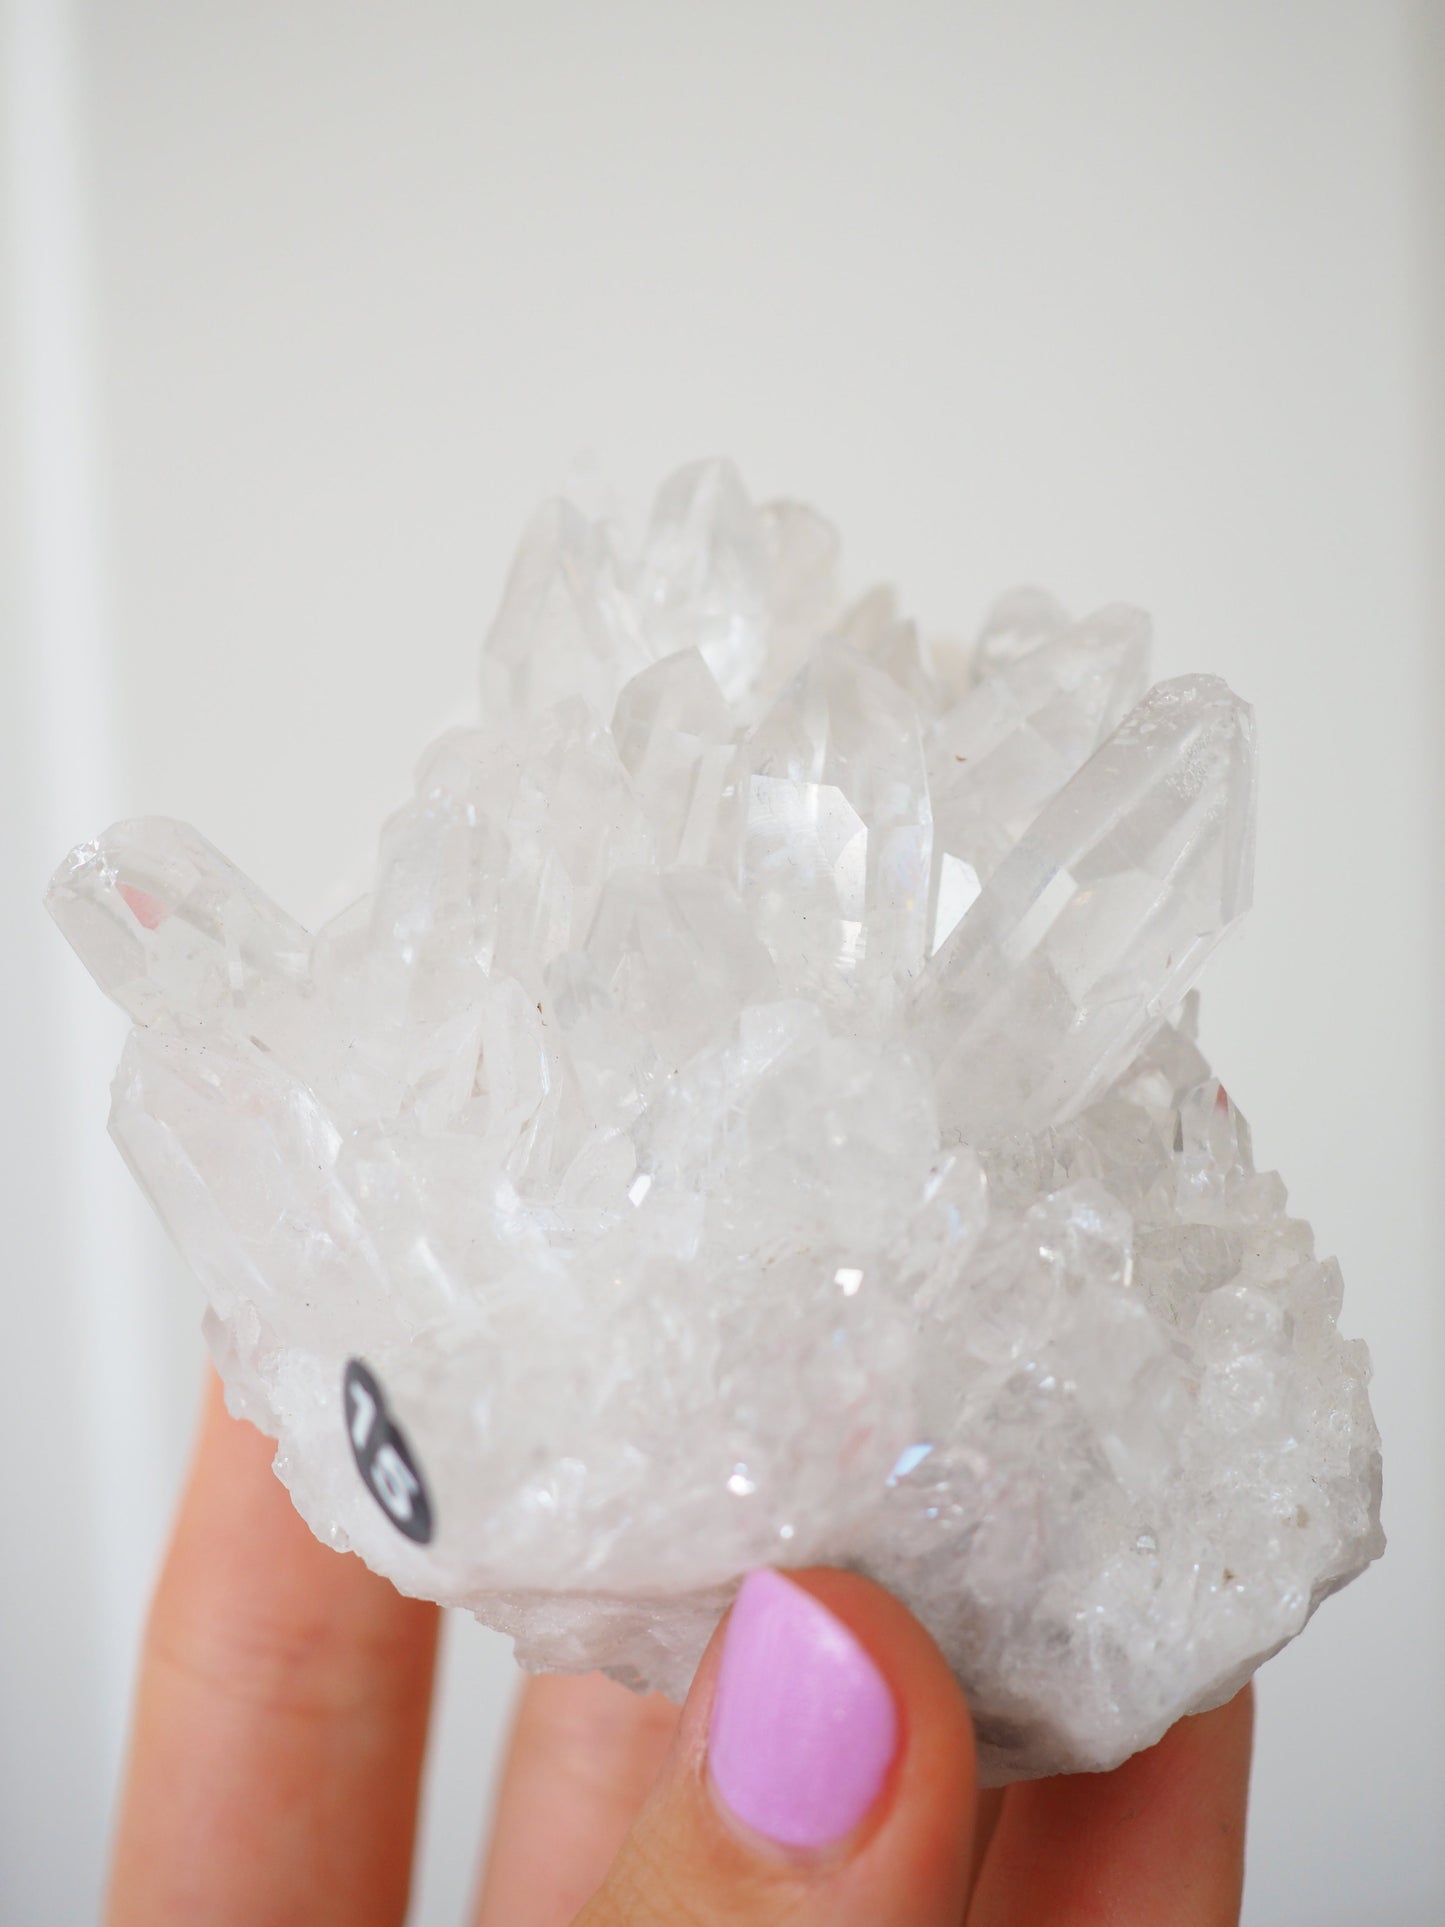 Bergkristall Cluster mit Regenbögen  ca 8cm [15] - aus Minas Gerais Brasilien HIGH QUALITY